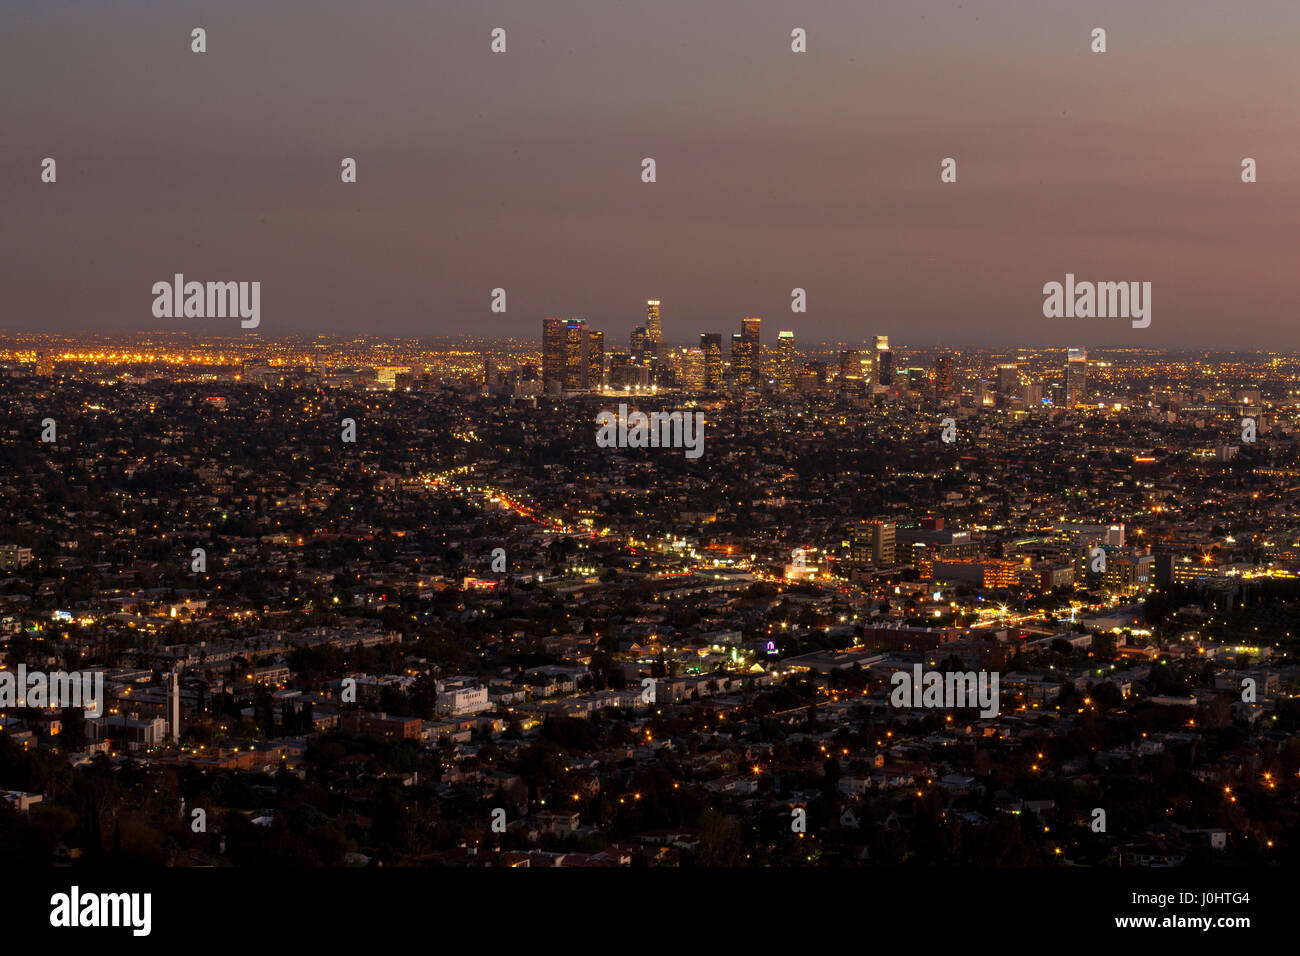 Los Angeles bei Nacht - Blick in Richtung Innenstadt Stockfoto